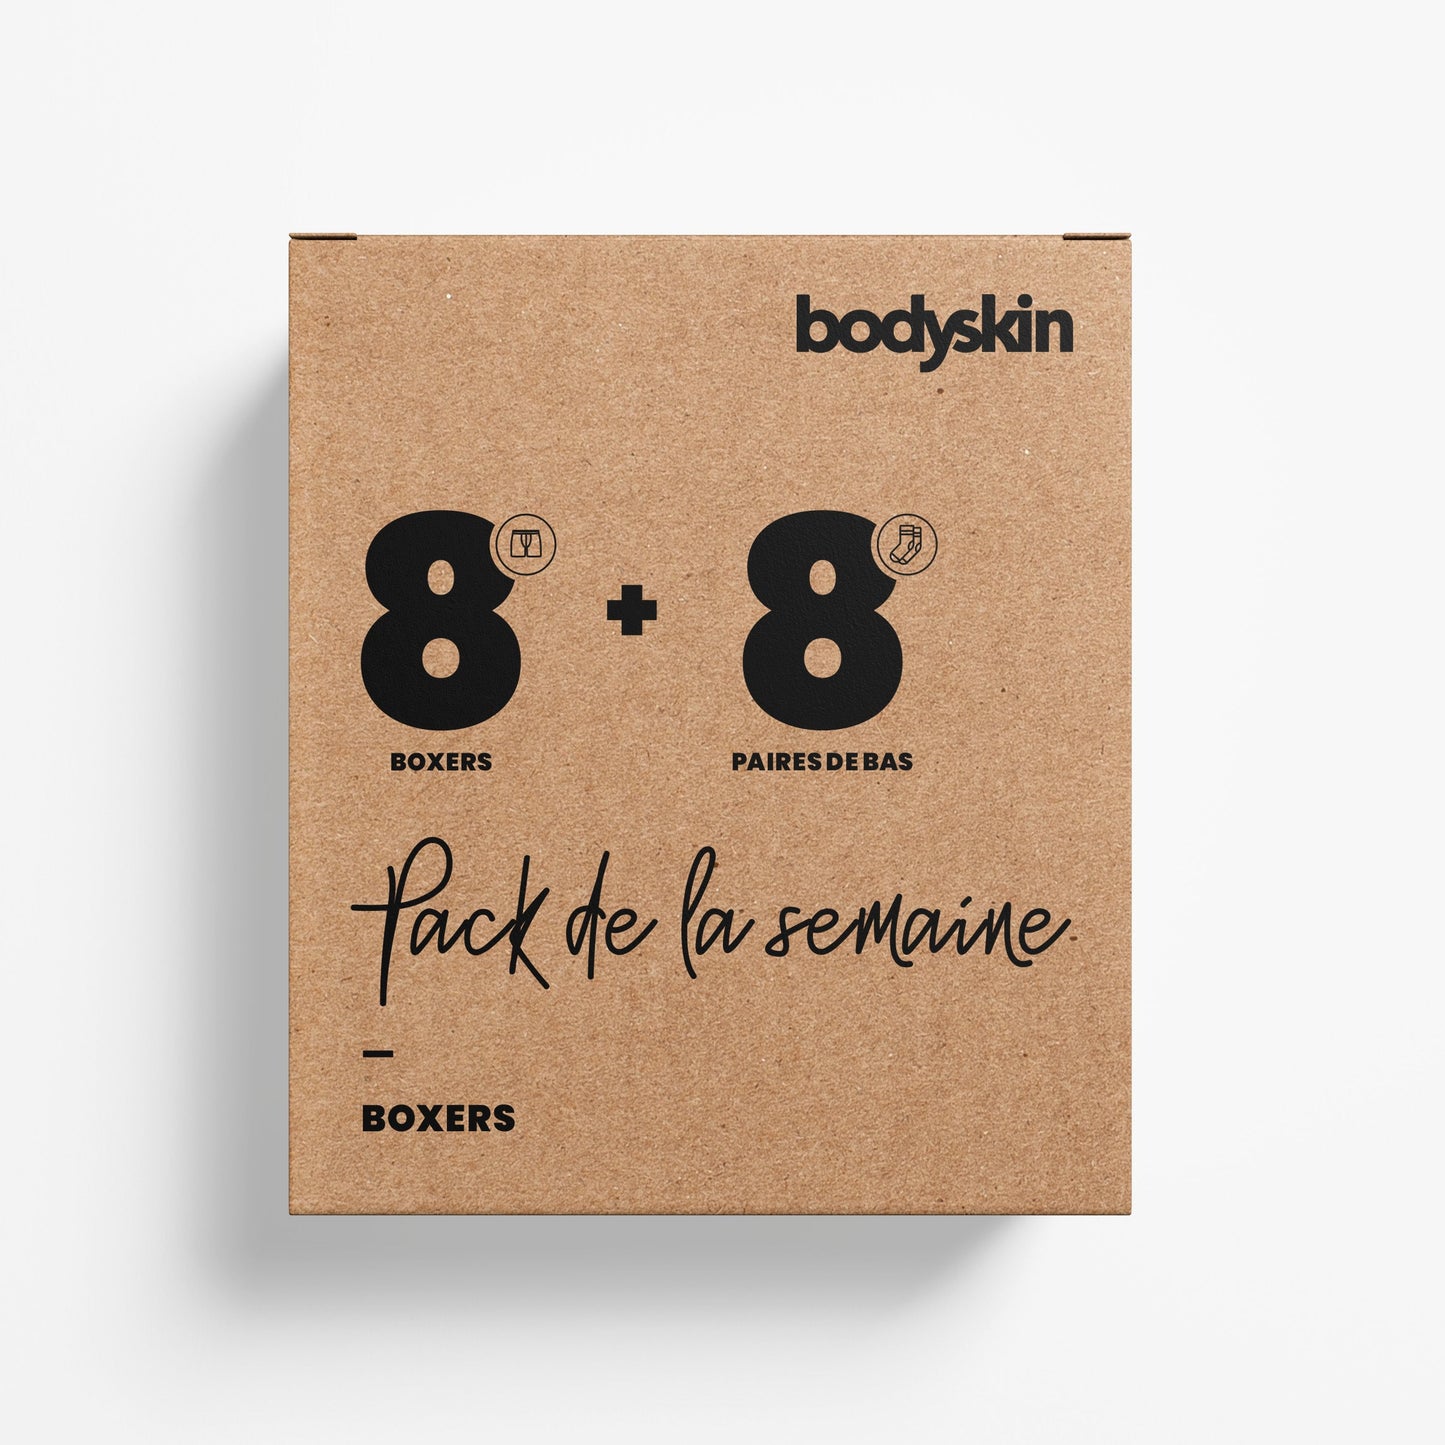 Bodyskin - Pack de la semaine: 8 boxers et 8 paires de bas